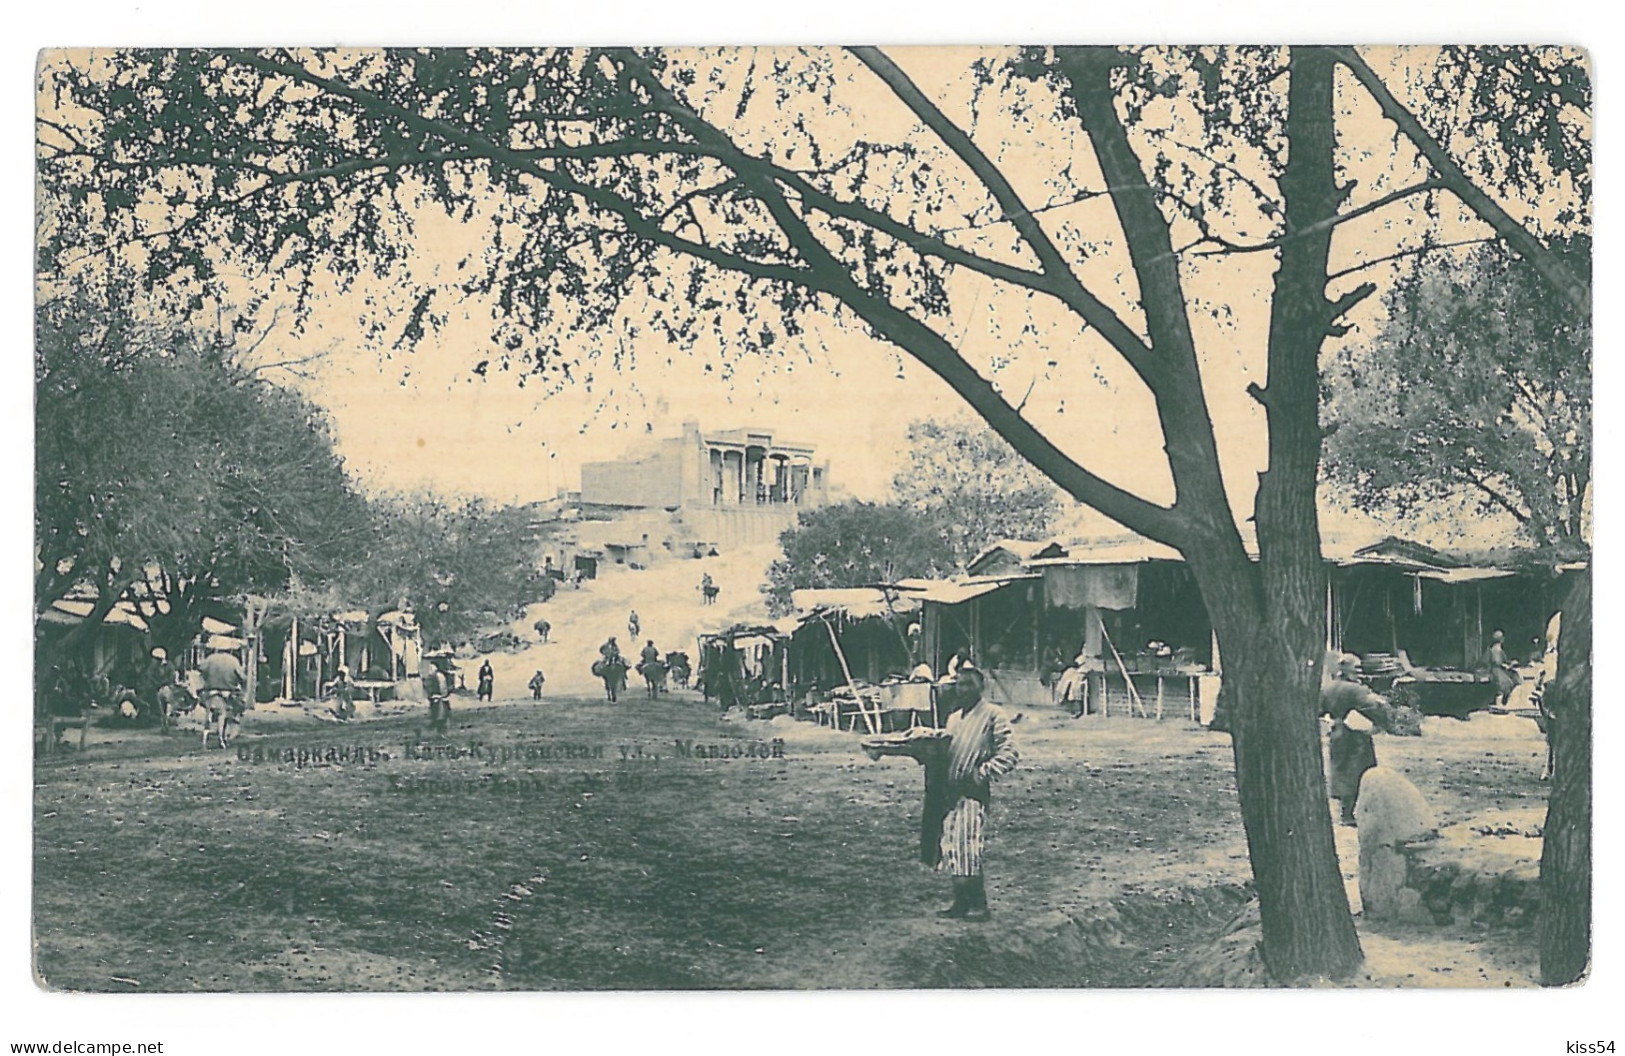 U 22 - 15533 SAMARKAND, Market, Uzbekistan - Old Postcard - Unused - 1914 - Uzbekistan